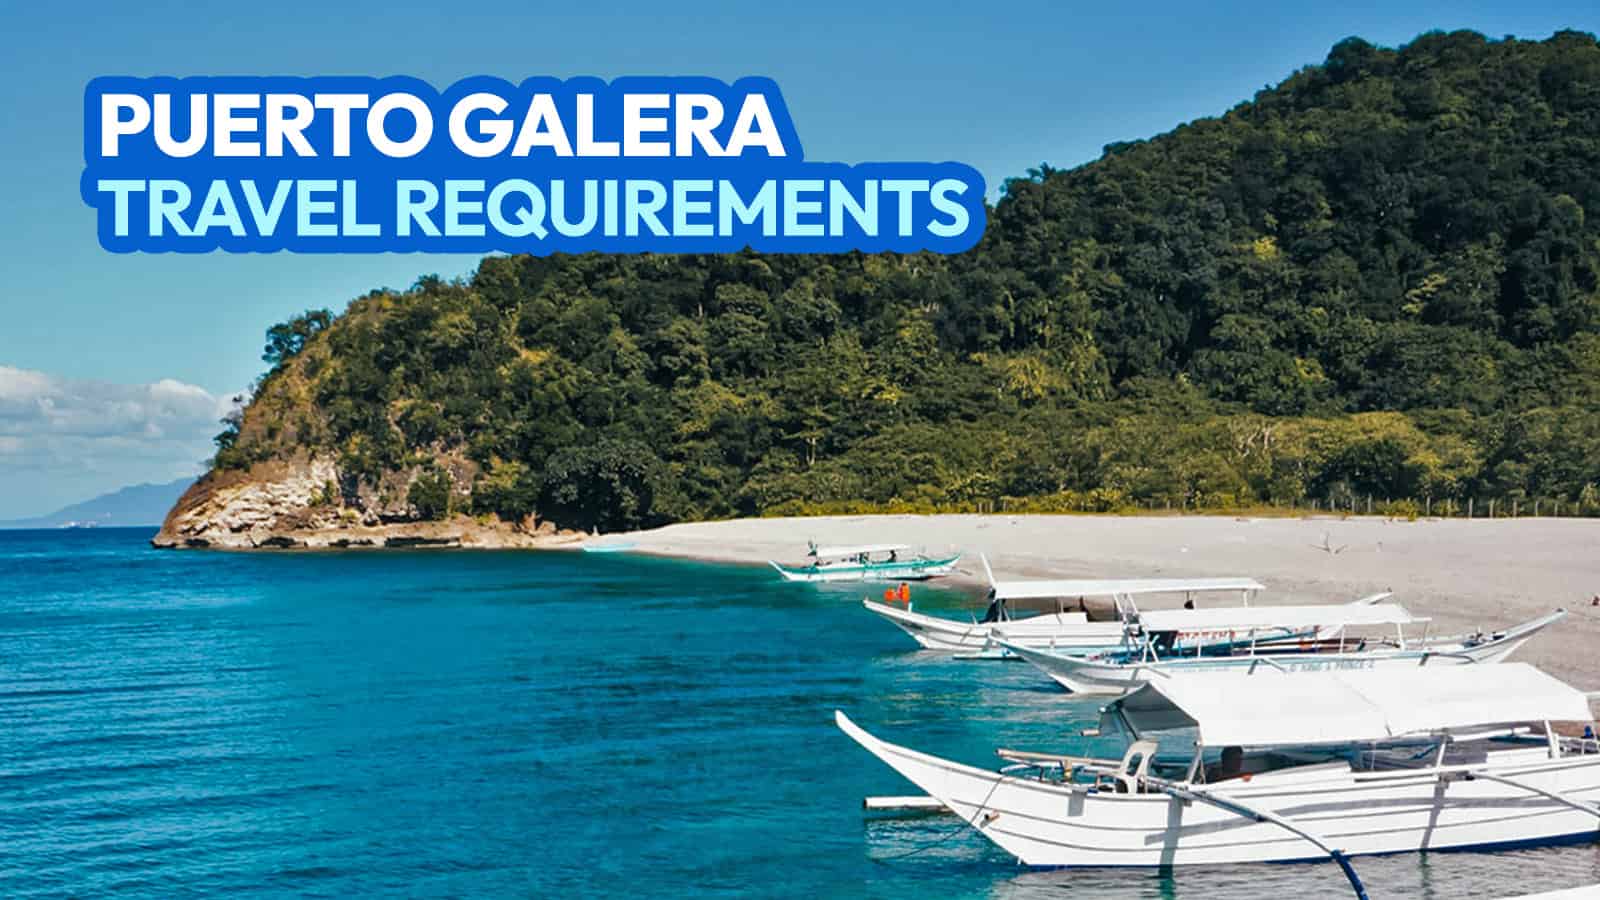 Puerto Galera旅行要求+ DOT认可的度假村和酒店列表